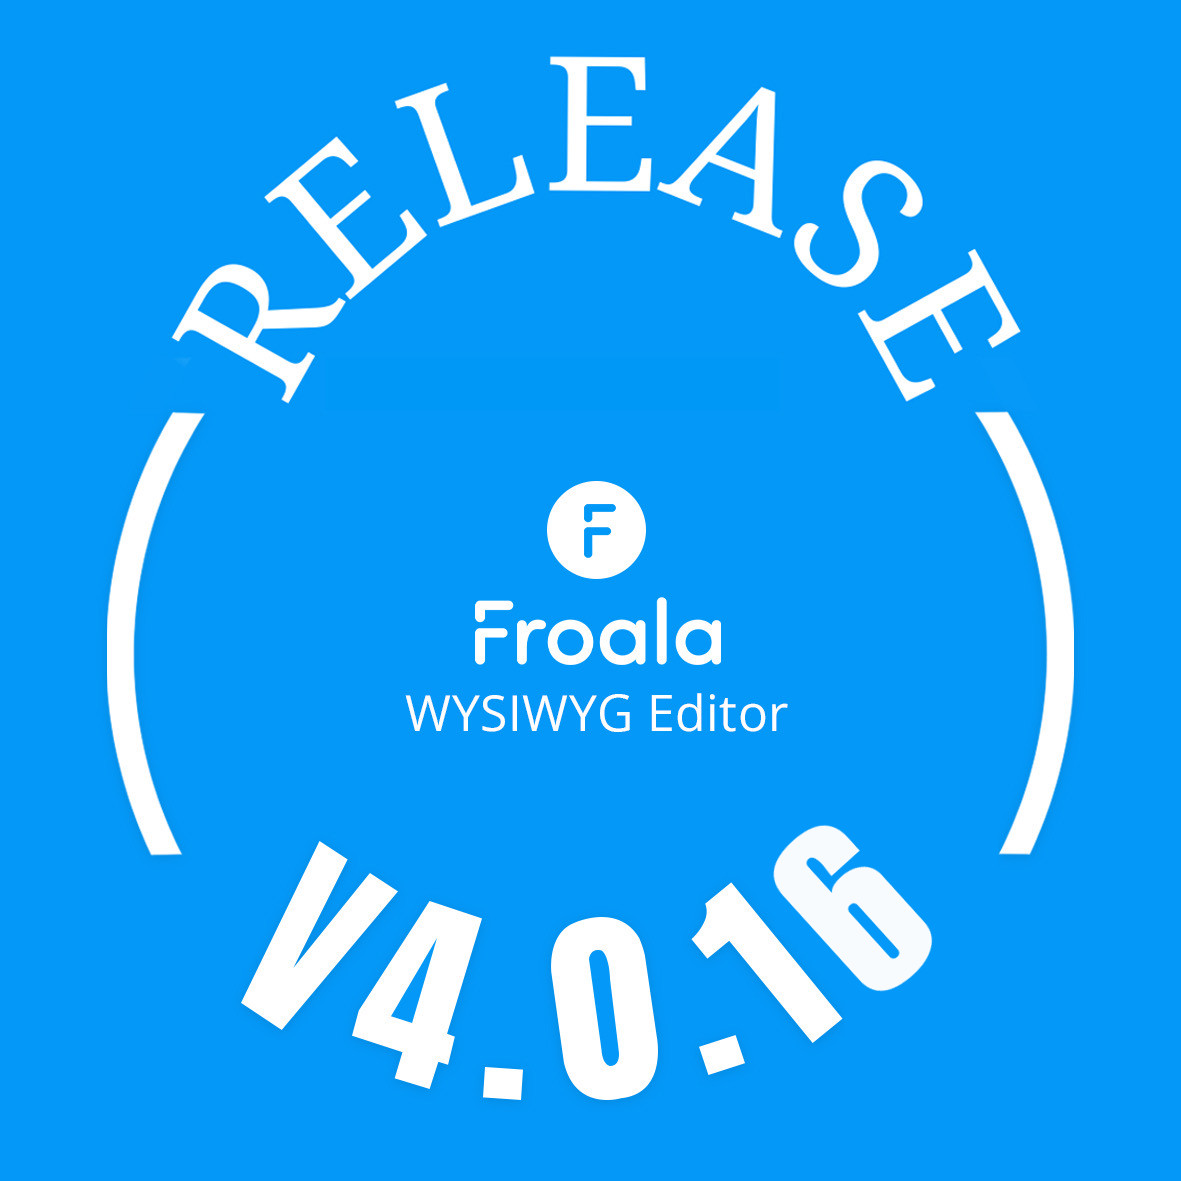 Froala editor v4.0.16